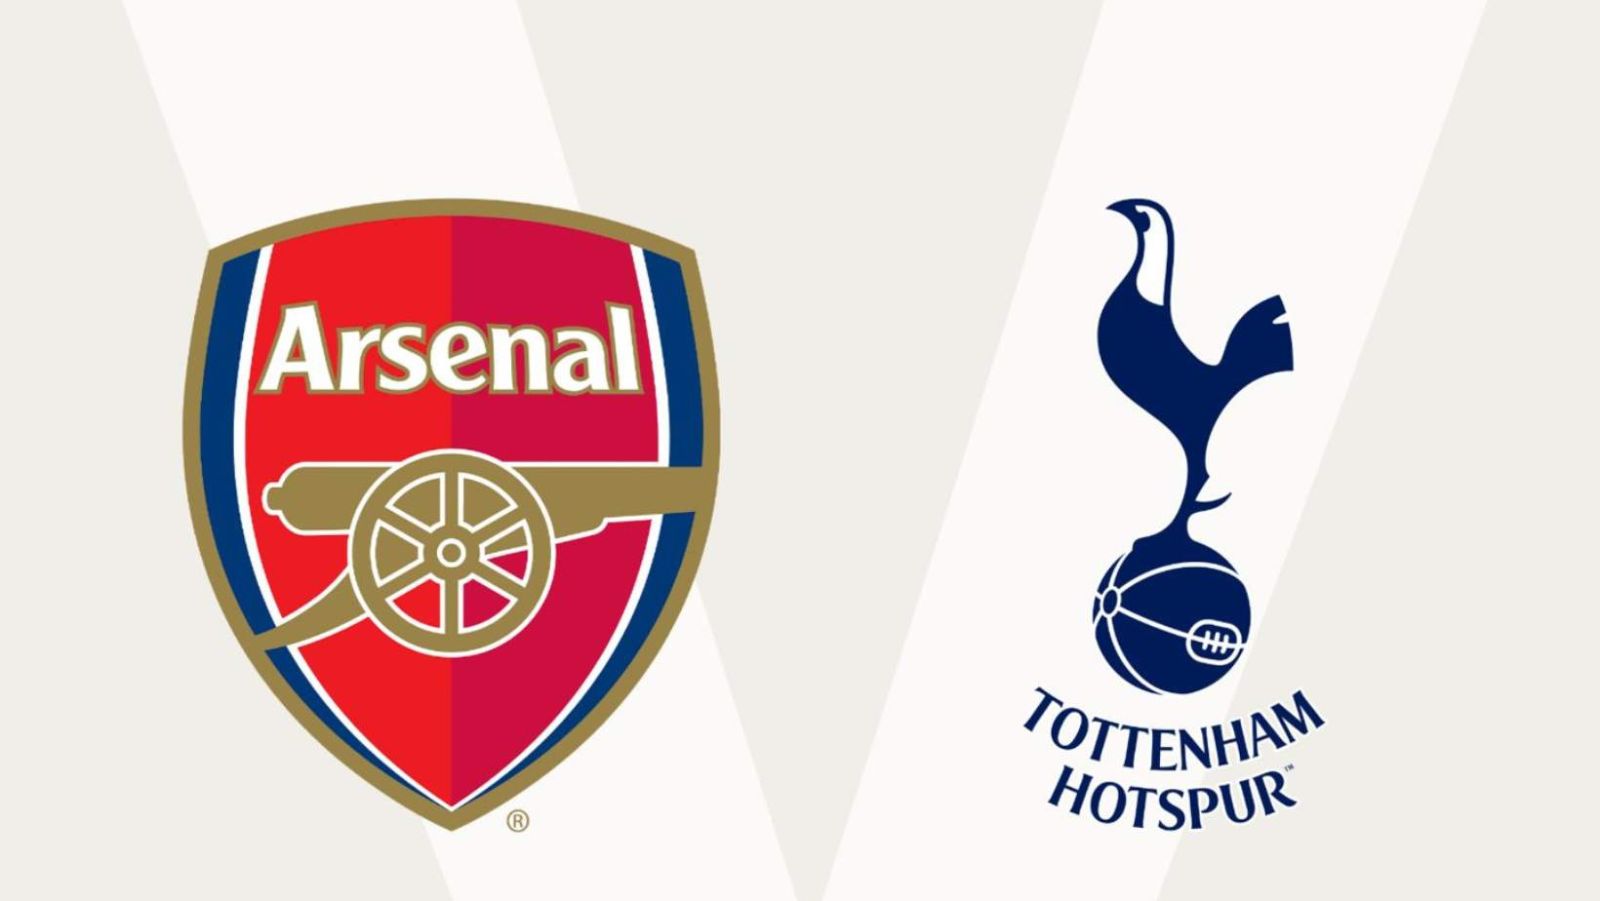 Arsenal - Tottenham : Pronostic, Analyse, Composition, Joueur à Suivre